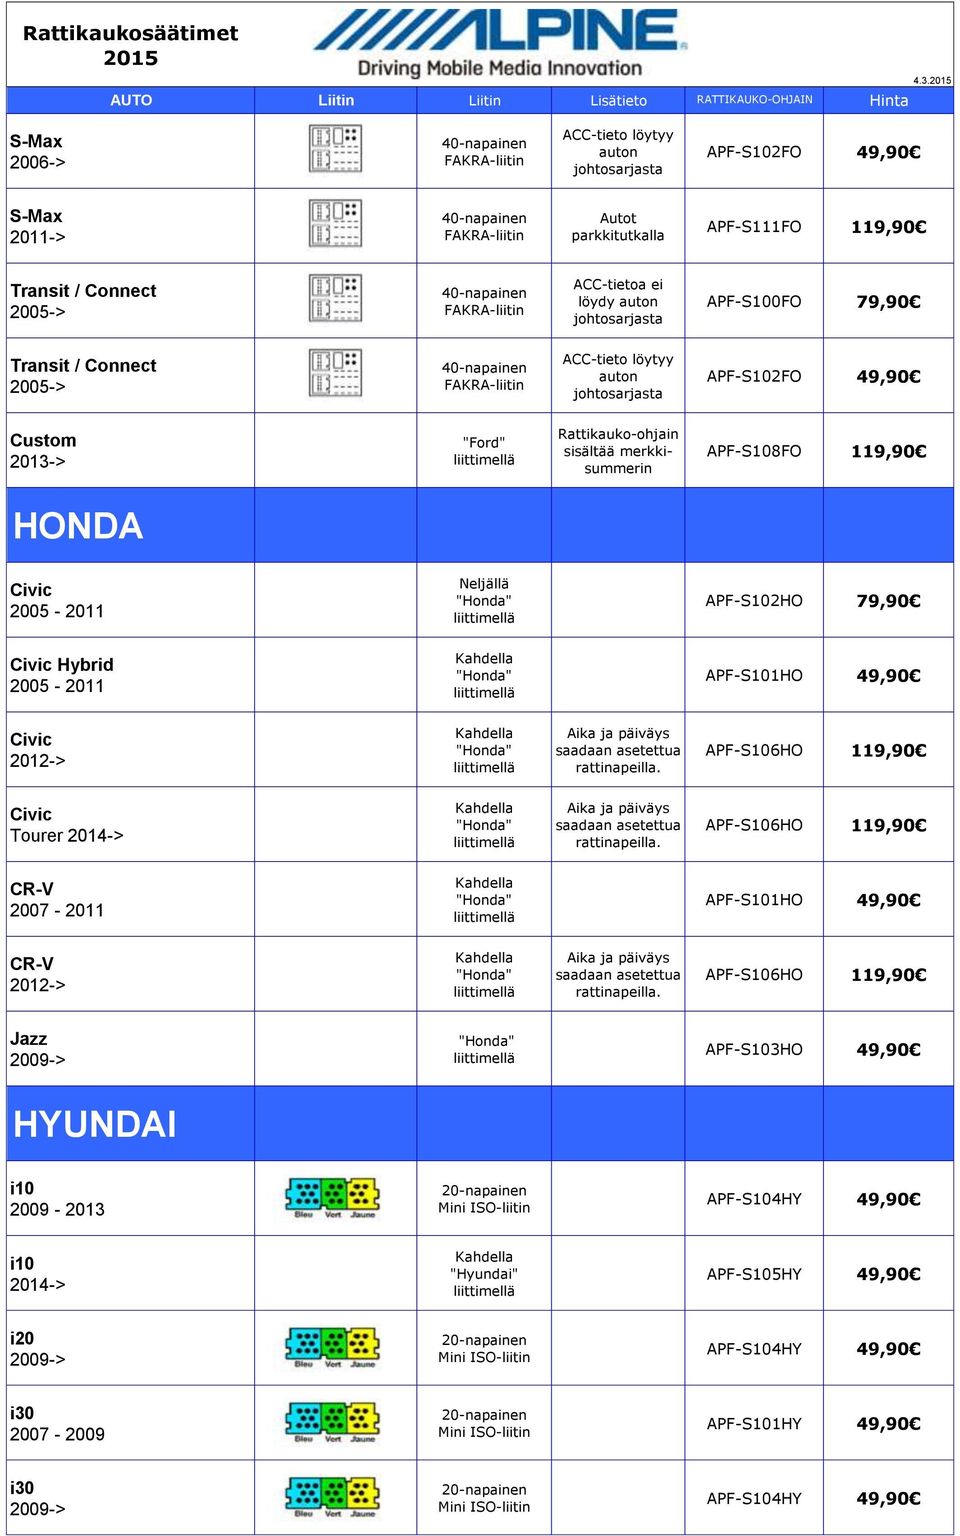 APF-S101HO Civic "Honda" Aika ja päiväys saadaan asetettua rattinapeilla. APF-S106HO Civic Tourer 2014-> "Honda" Aika ja päiväys saadaan asetettua rattinapeilla.